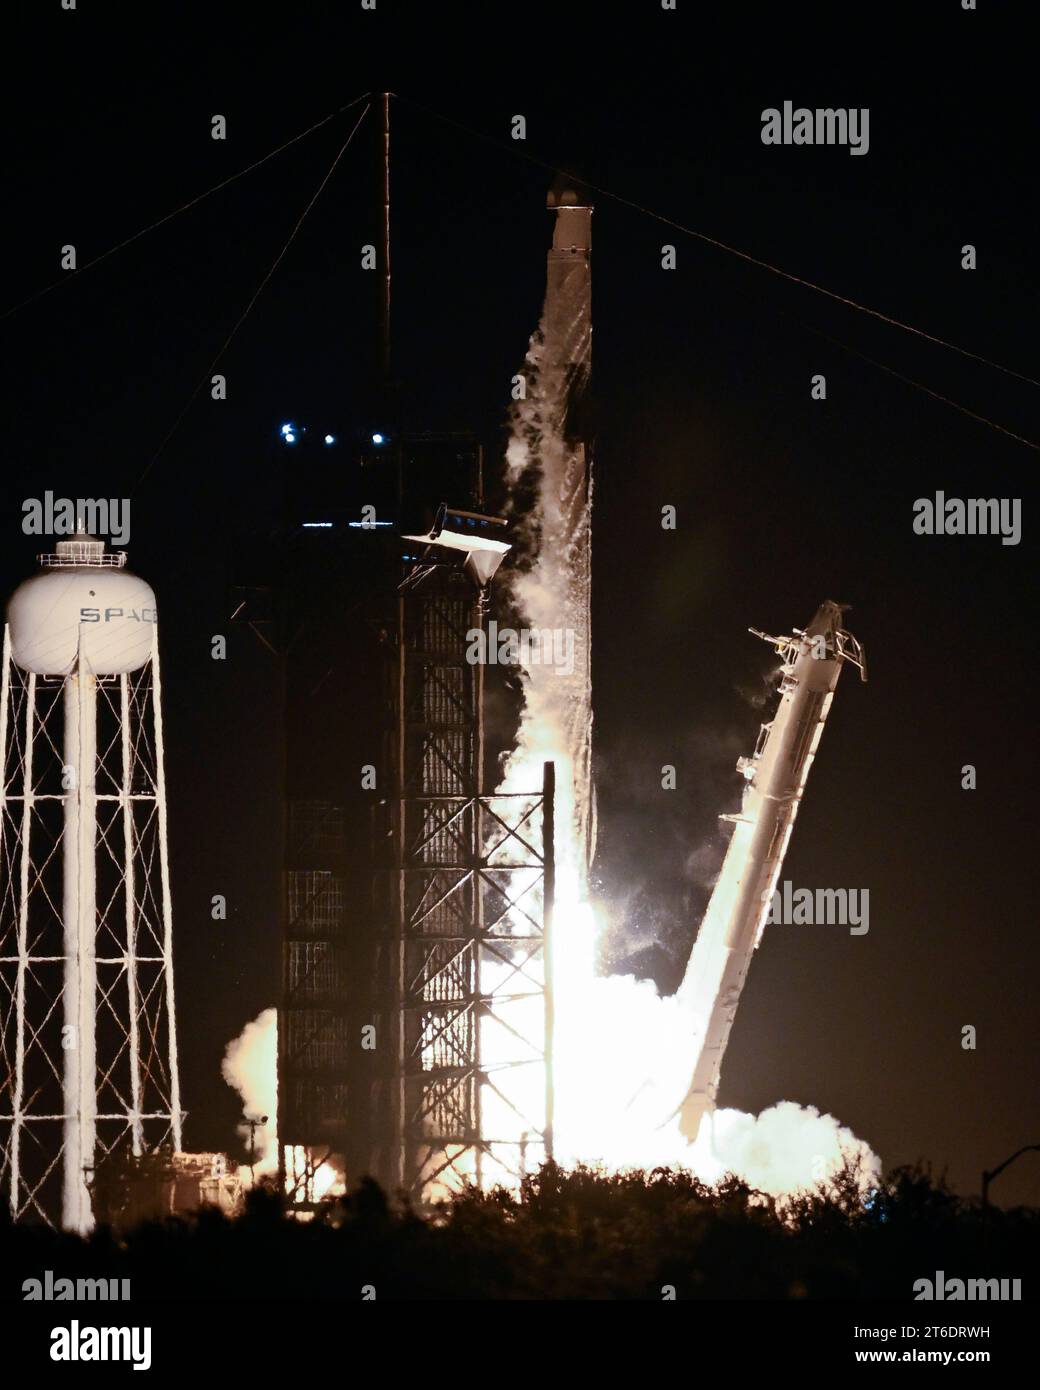 Un razzo SpaceX Falcon 9 lancia la sua navicella spaziale Cargo Dragon nella missione CRS 29 della NASA alla stazione spaziale Internazionale alle 20:28 PM dal Launch Complex 39A al Kennedy Space Center, Florida, giovedì 9 novembre 2023. Foto di Joe Marino/UPI Credit: UPI/Alamy Live News Foto Stock